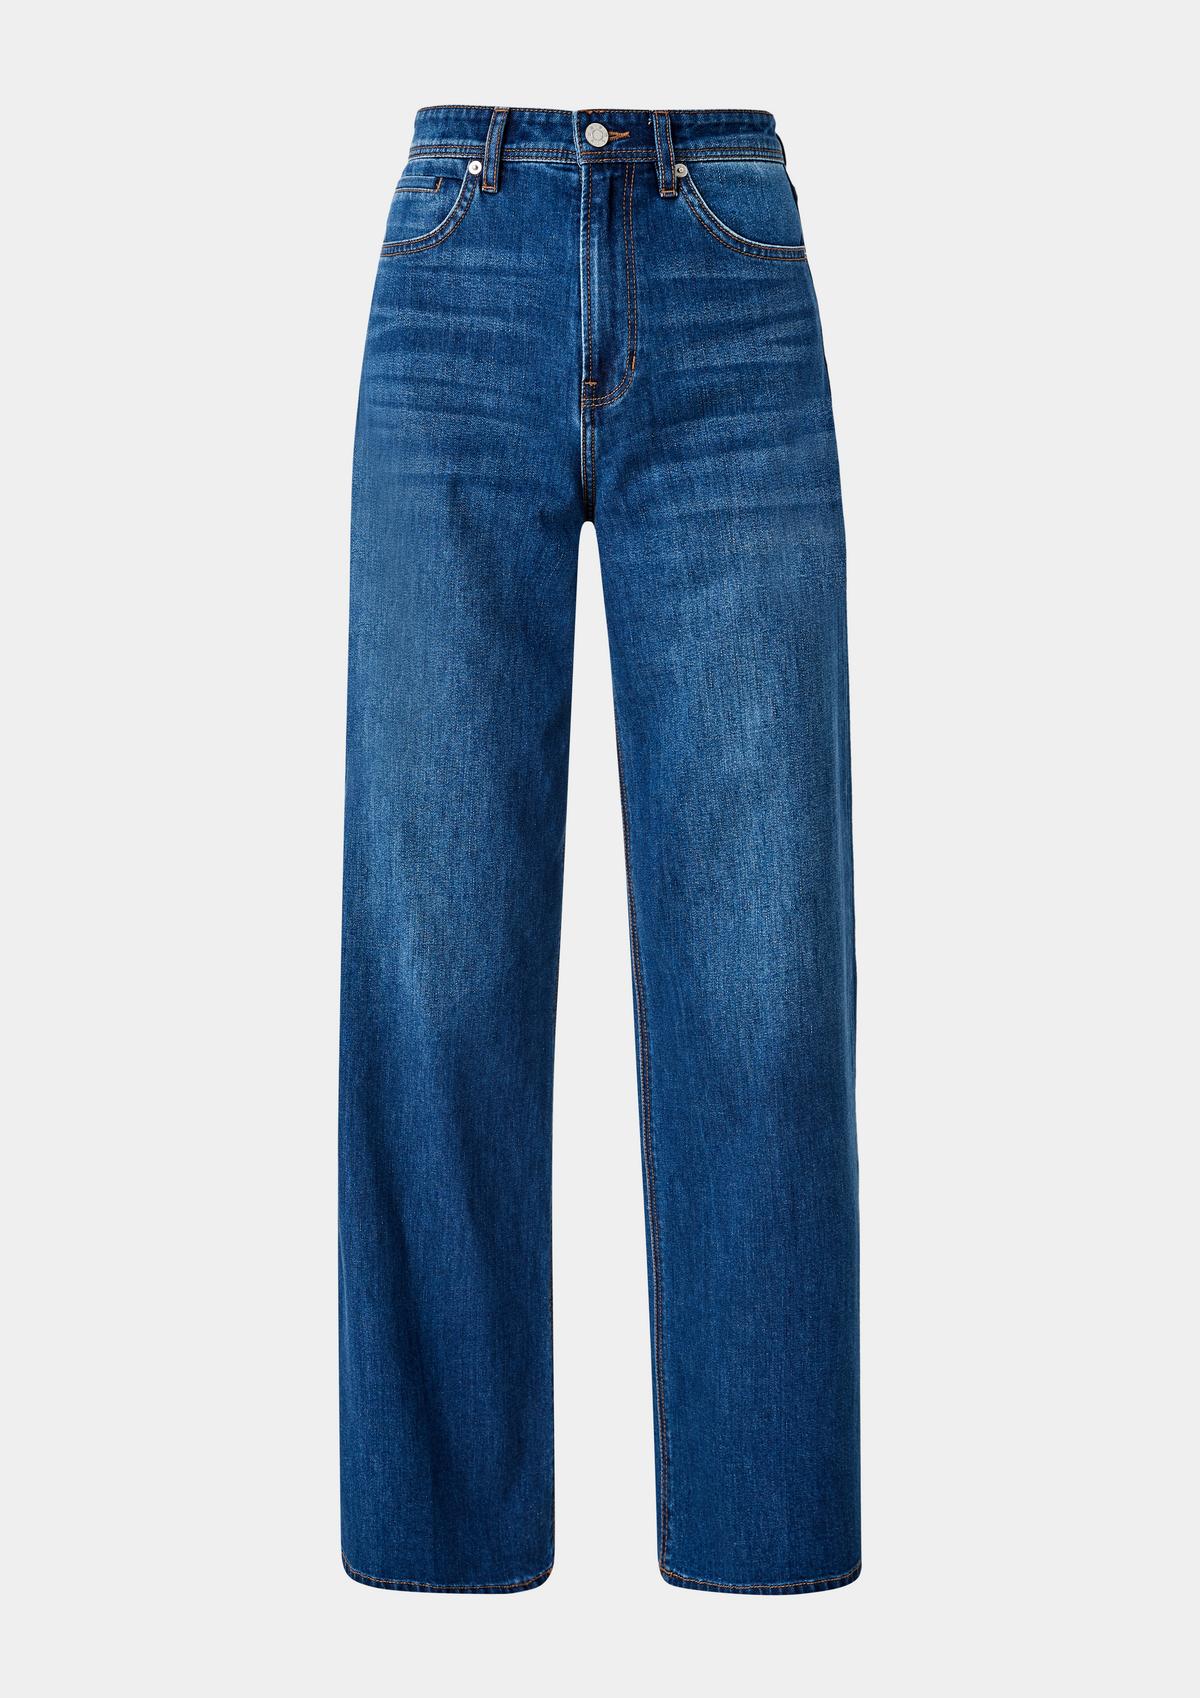 s.Oliver Suri jeans / regular fit / super high rise / wide leg